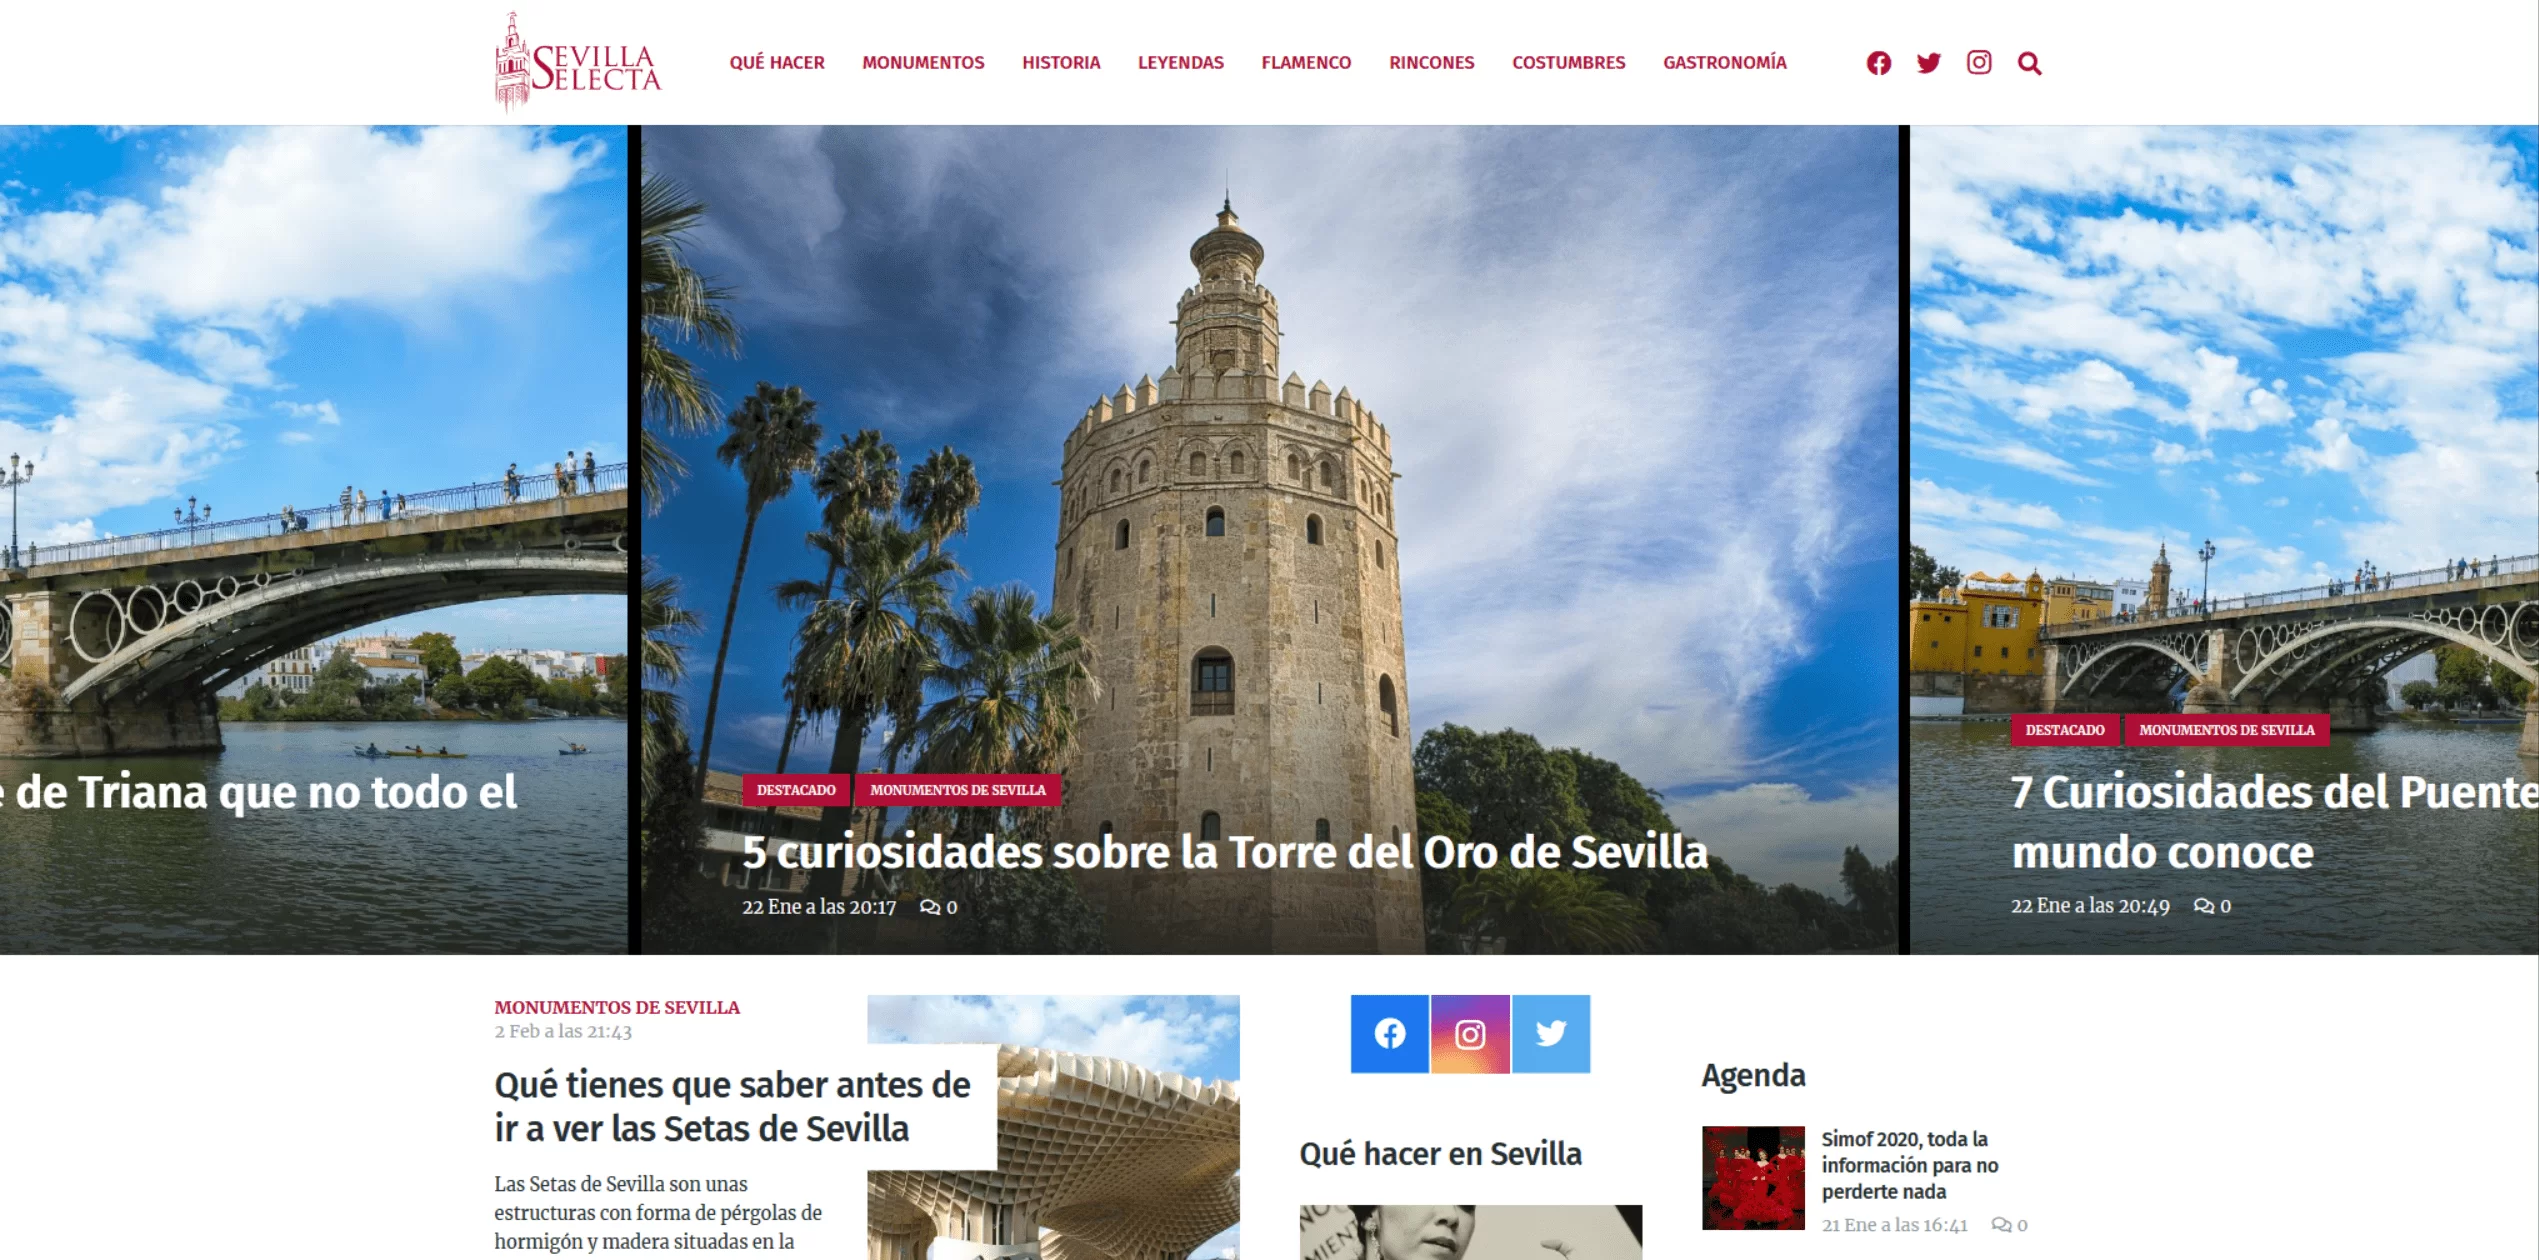 Sevilla Selecta | Diseño de revista digital